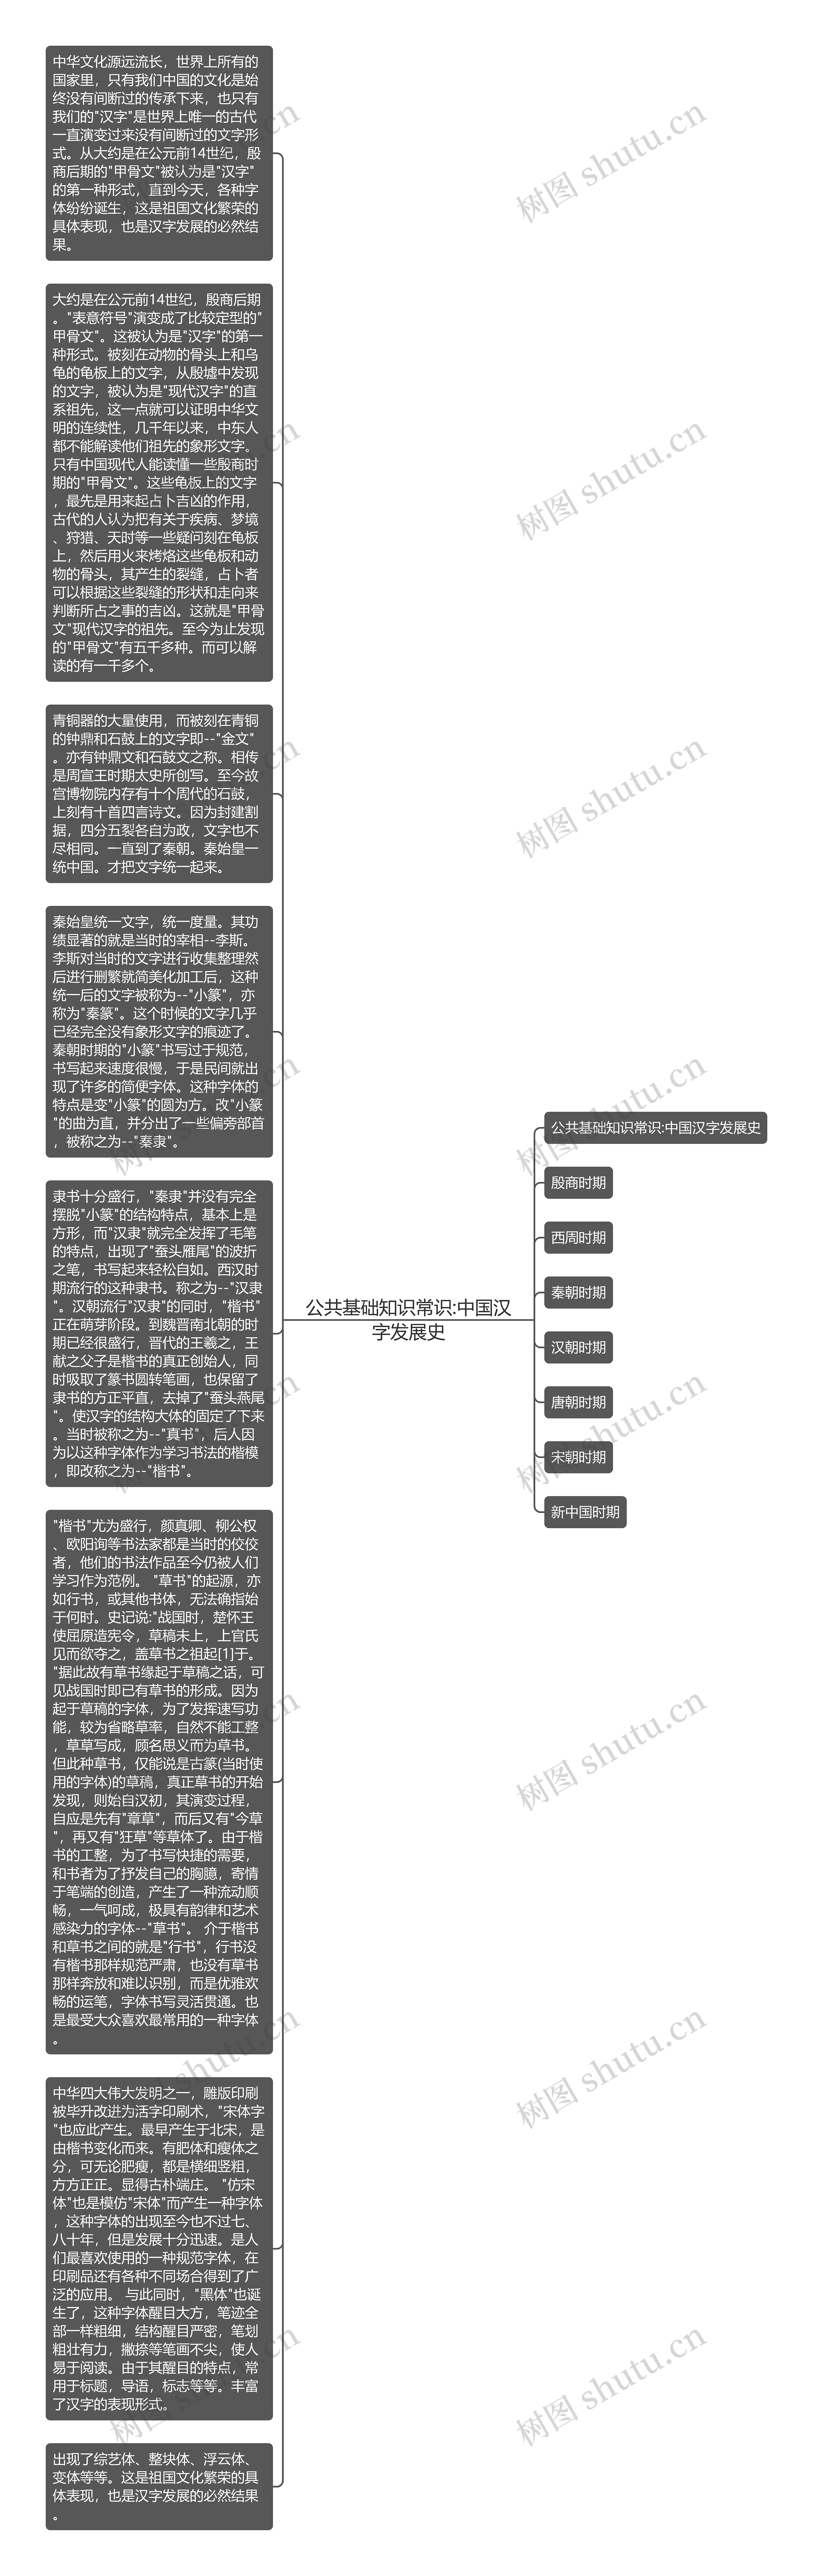 公共基础知识常识:中国汉字发展史思维导图